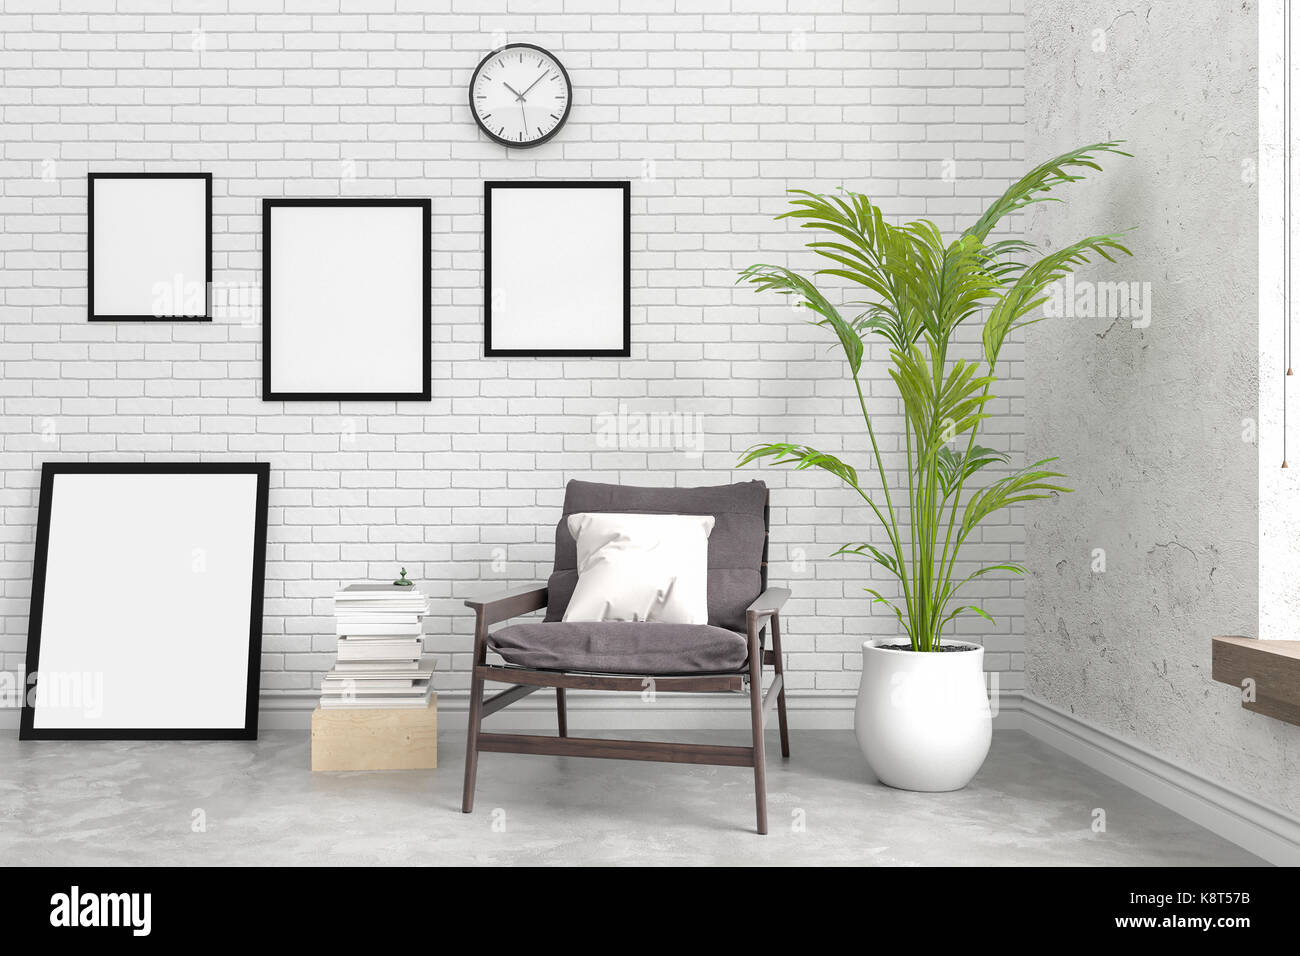 Mur intérieur en brique moderne avec cadre photo Blanc ,le rendu 3D Banque D'Images